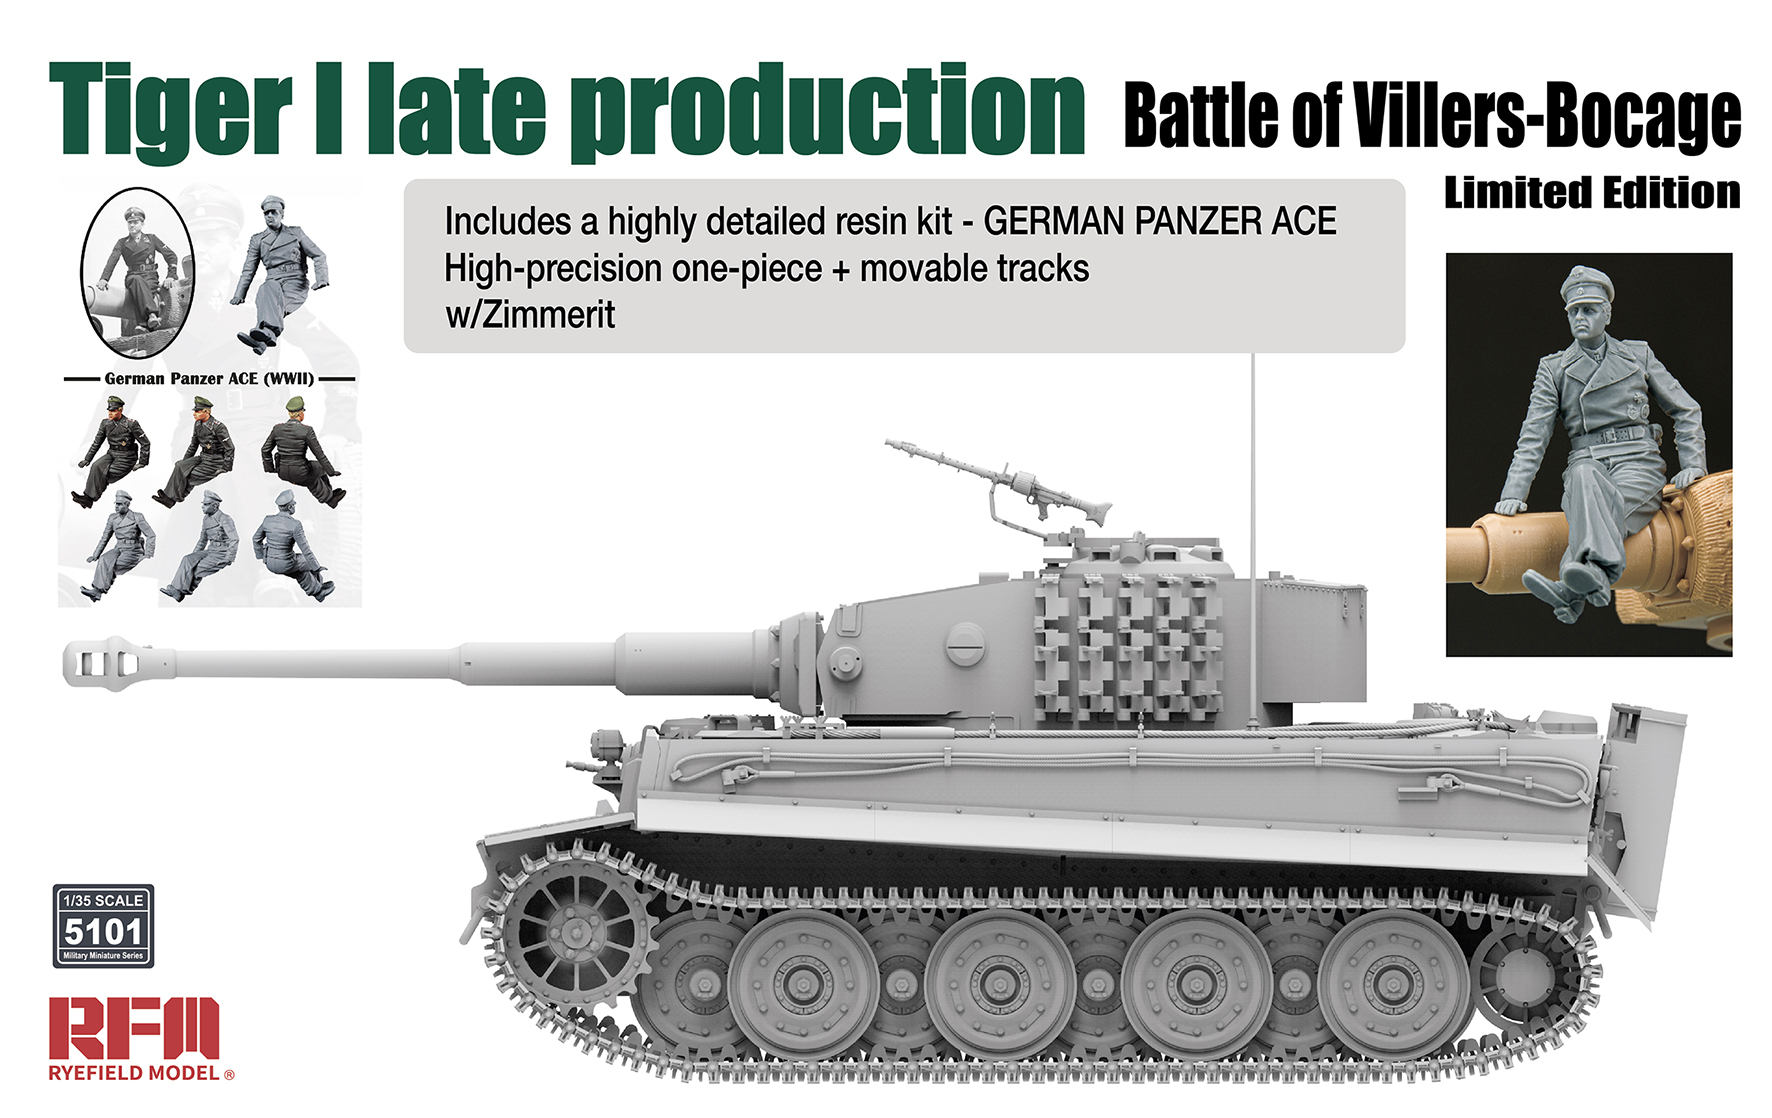 1/35 ティーガーⅠ 後期型 (ヴィレル・ボカージュの戦い) w/ツィンメリット & ドイツパンツァーエース